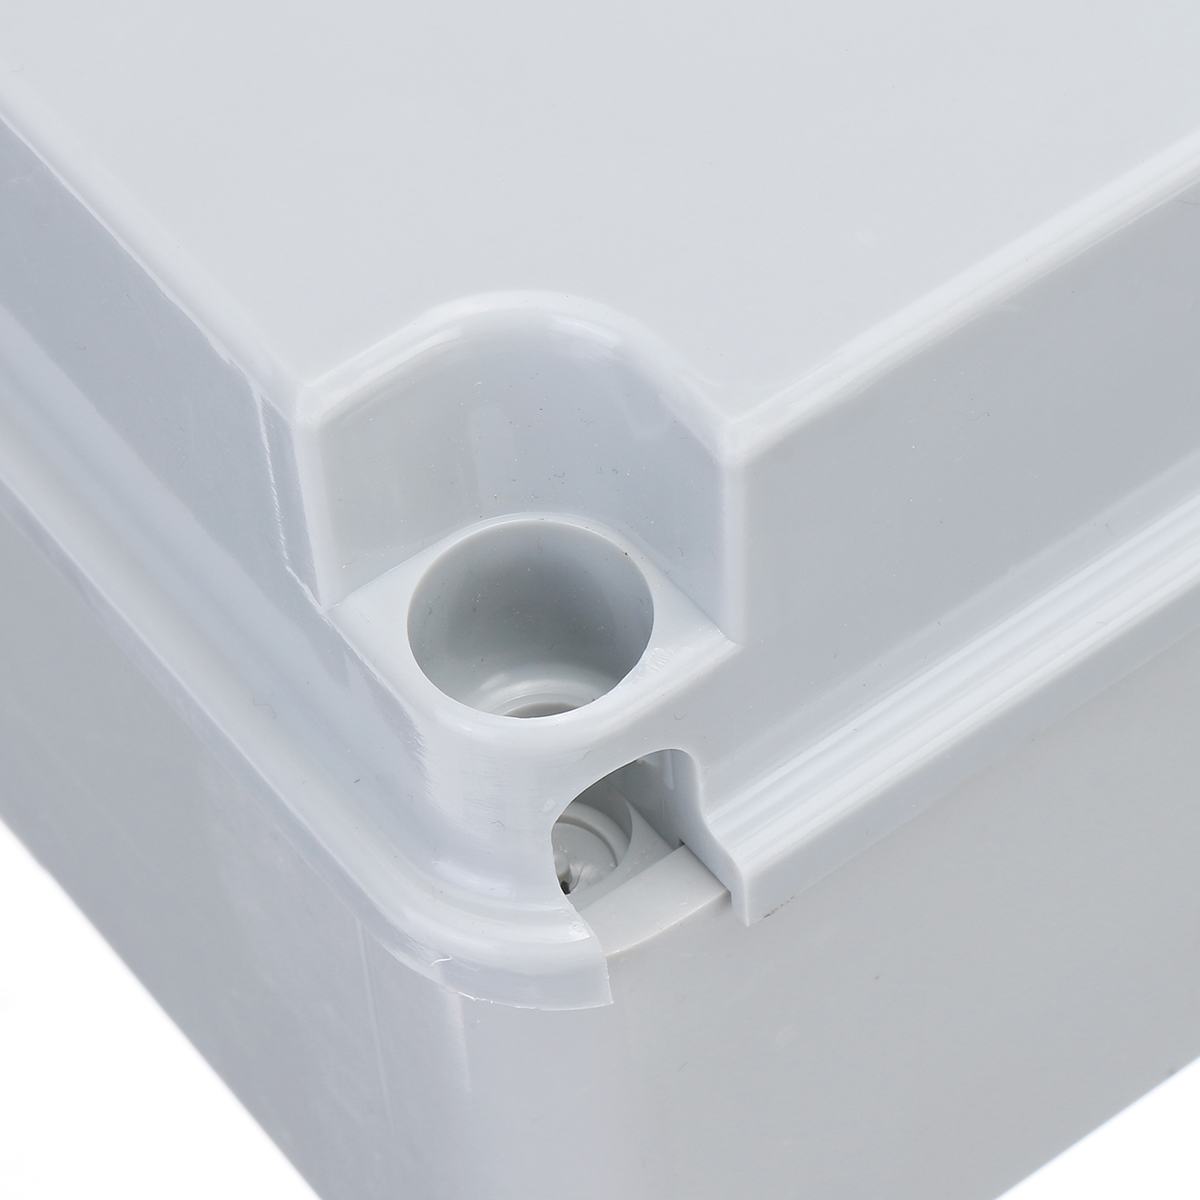 IP65-Weatherproof-PVC-Plastic-Outdoor-Industrial-Adaptive-Junction-Box-Case-1640201-8